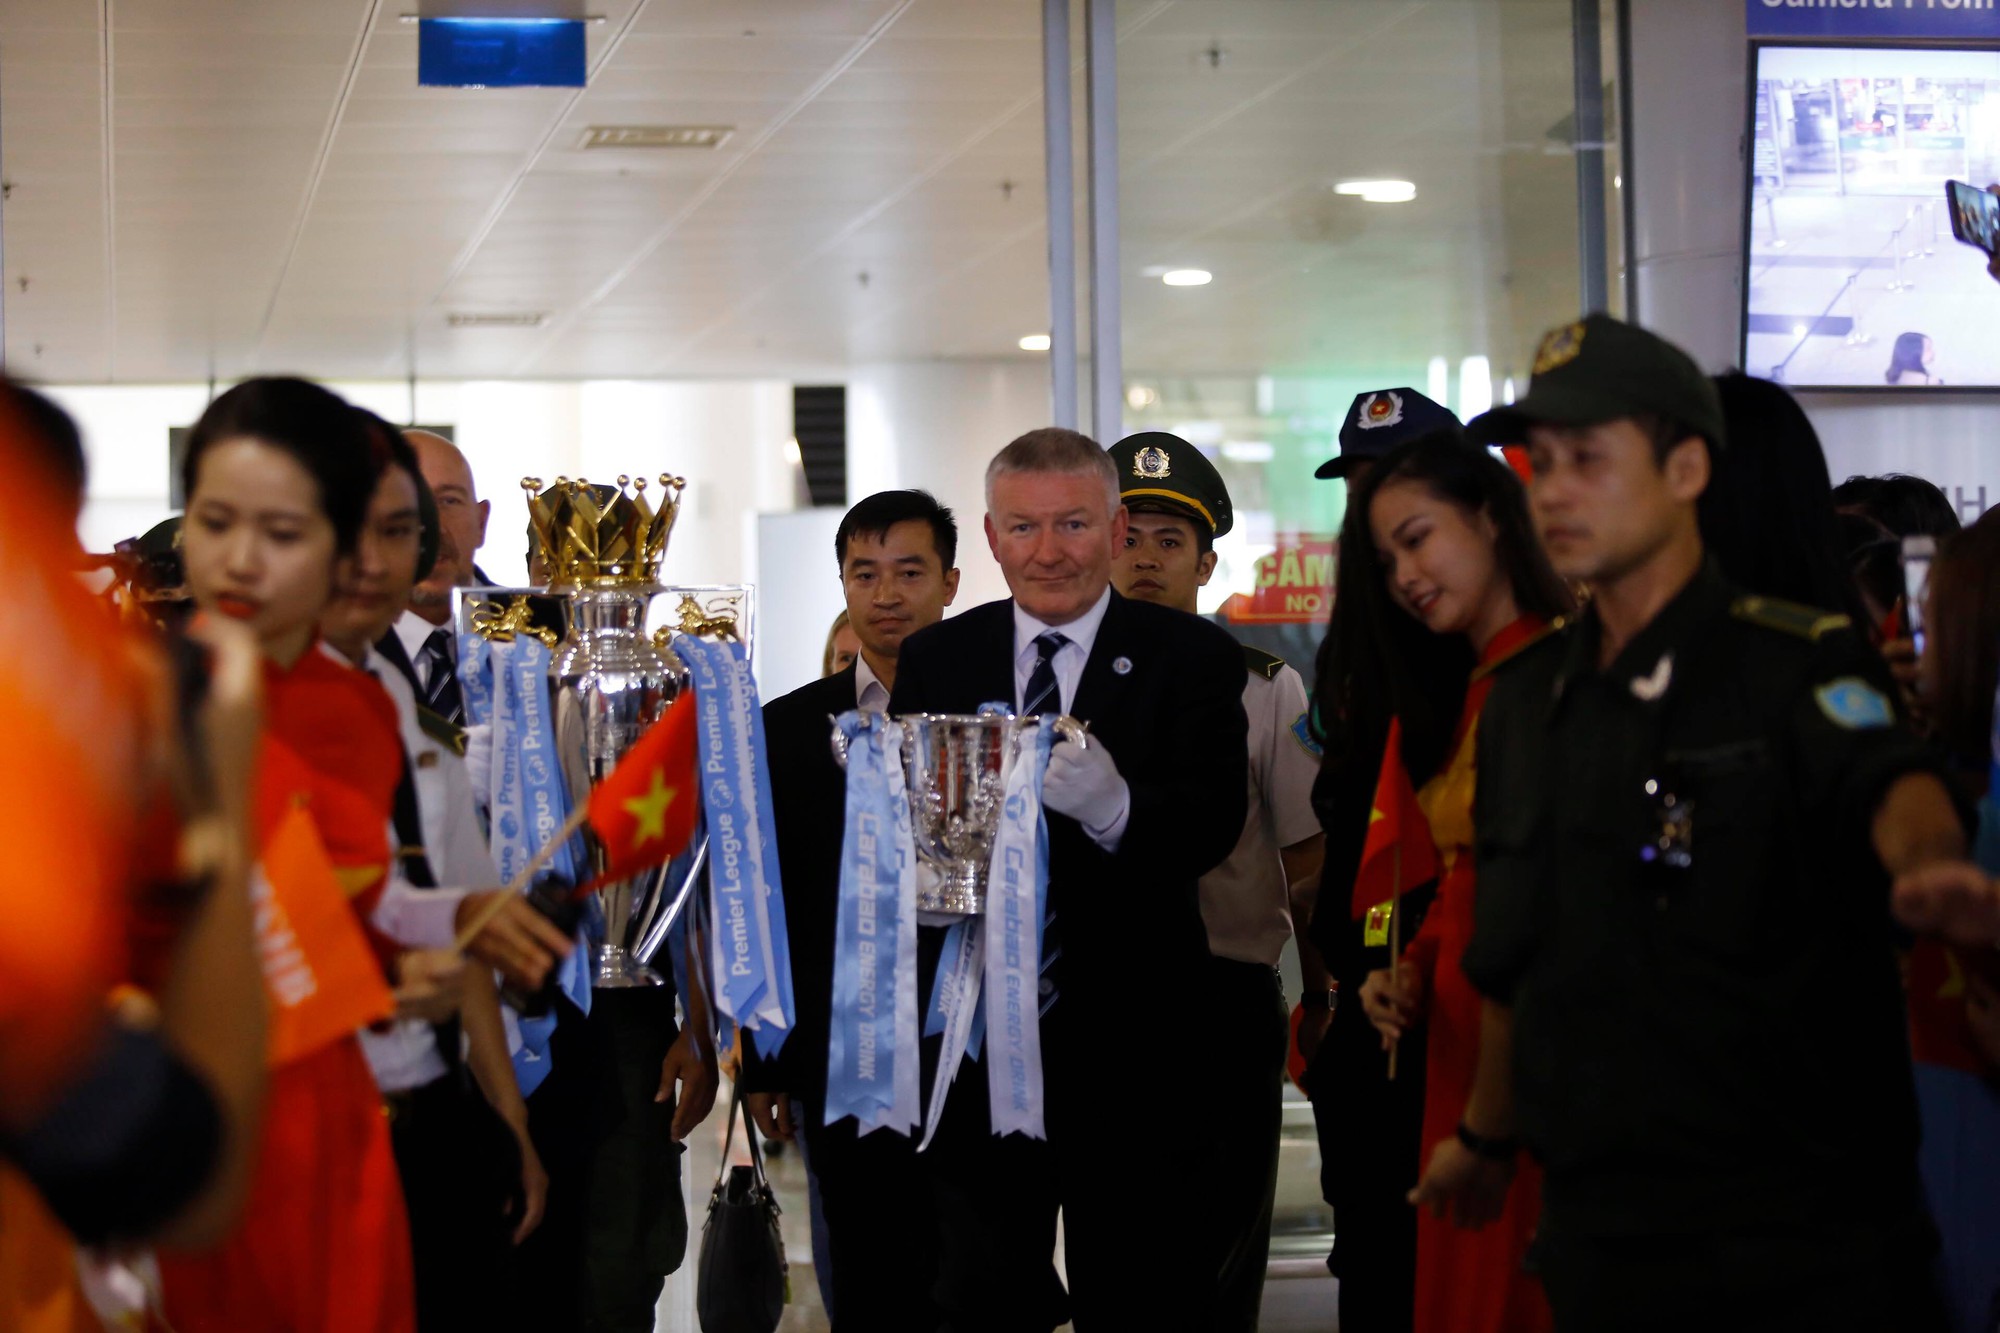 Cúp bạc Premier League được bảo vệ cẩn mật khi đến Việt Nam - Ảnh 1.